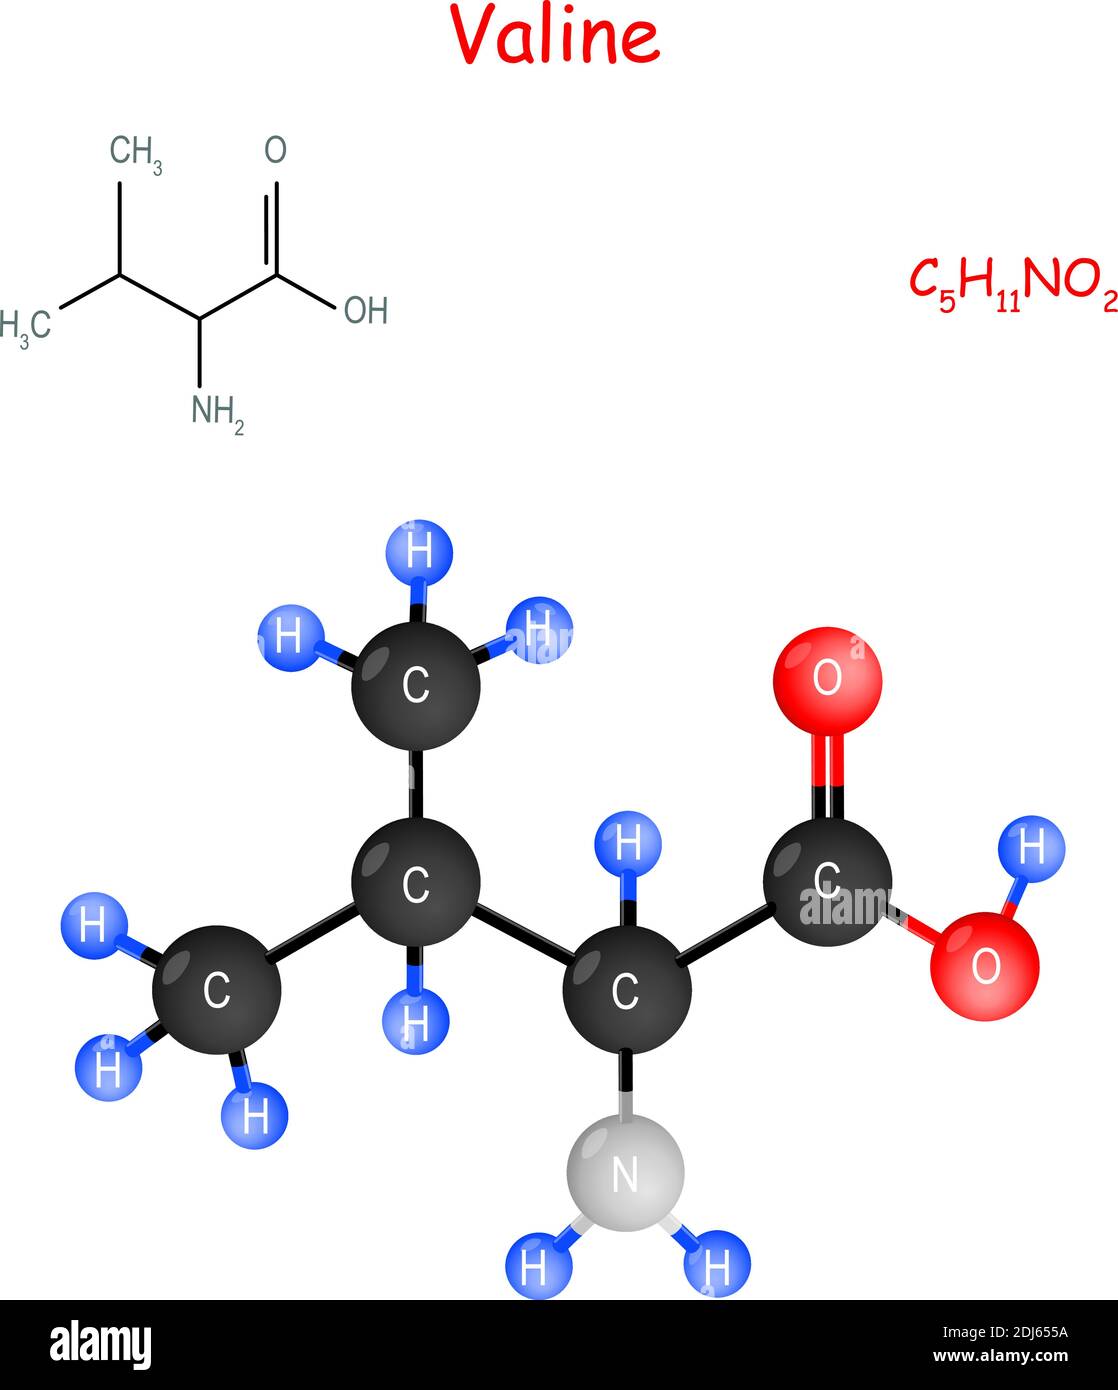 La valina è un aminoacido essenziale. Formula strutturale chimica e modello di molecola. C5H11NO2. Illustrazione vettoriale per uso medico-educativo Illustrazione Vettoriale